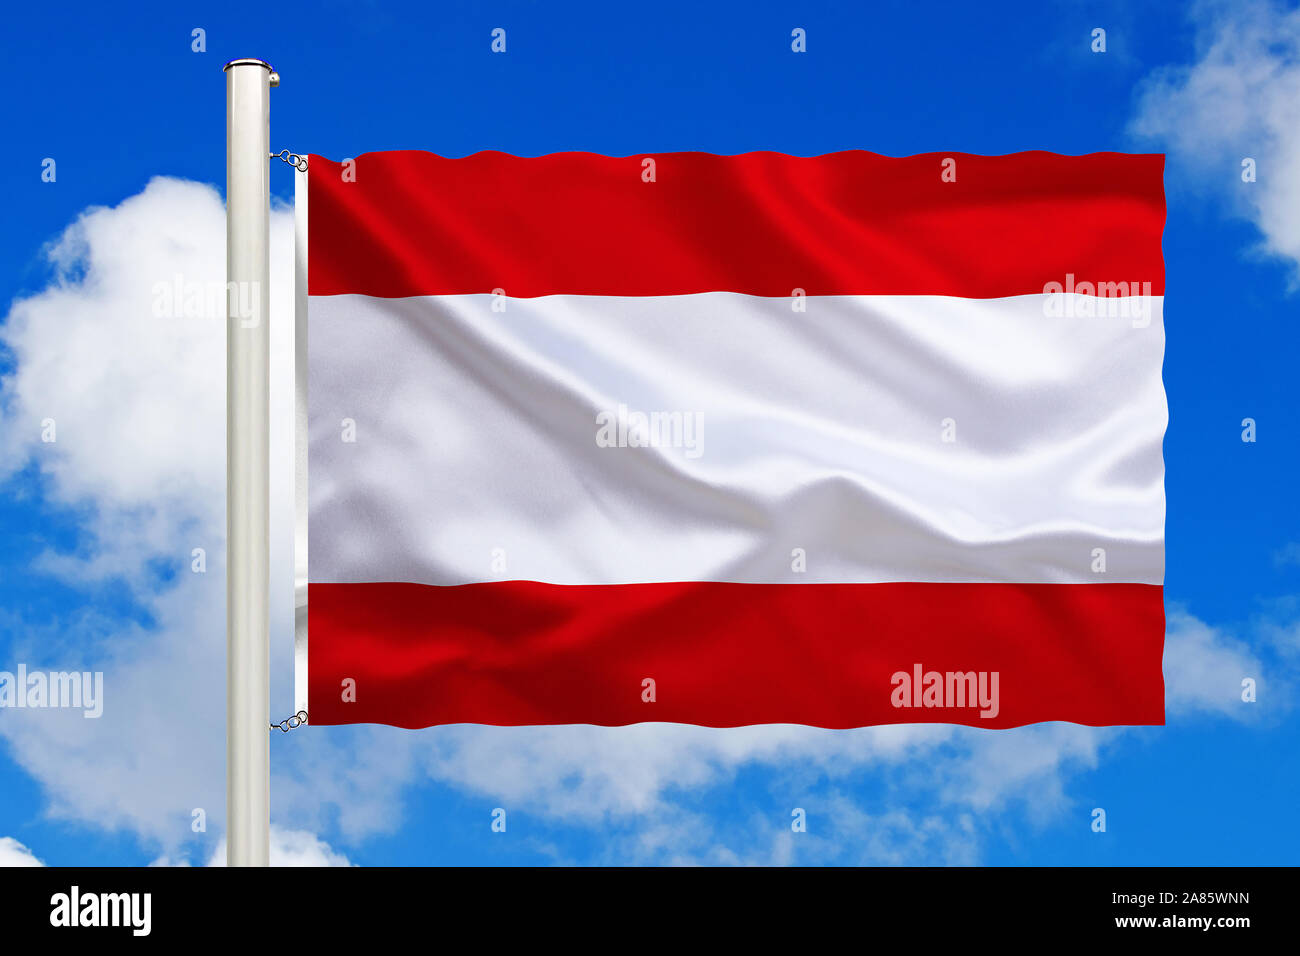 Französich-Polynesien, Tahiti, Südsee, Nationalfahne Nationalflagge,,, Flaggenmast Fahne Flagge, Cumulus, Wolken vor blauen Himmel, Banque D'Images